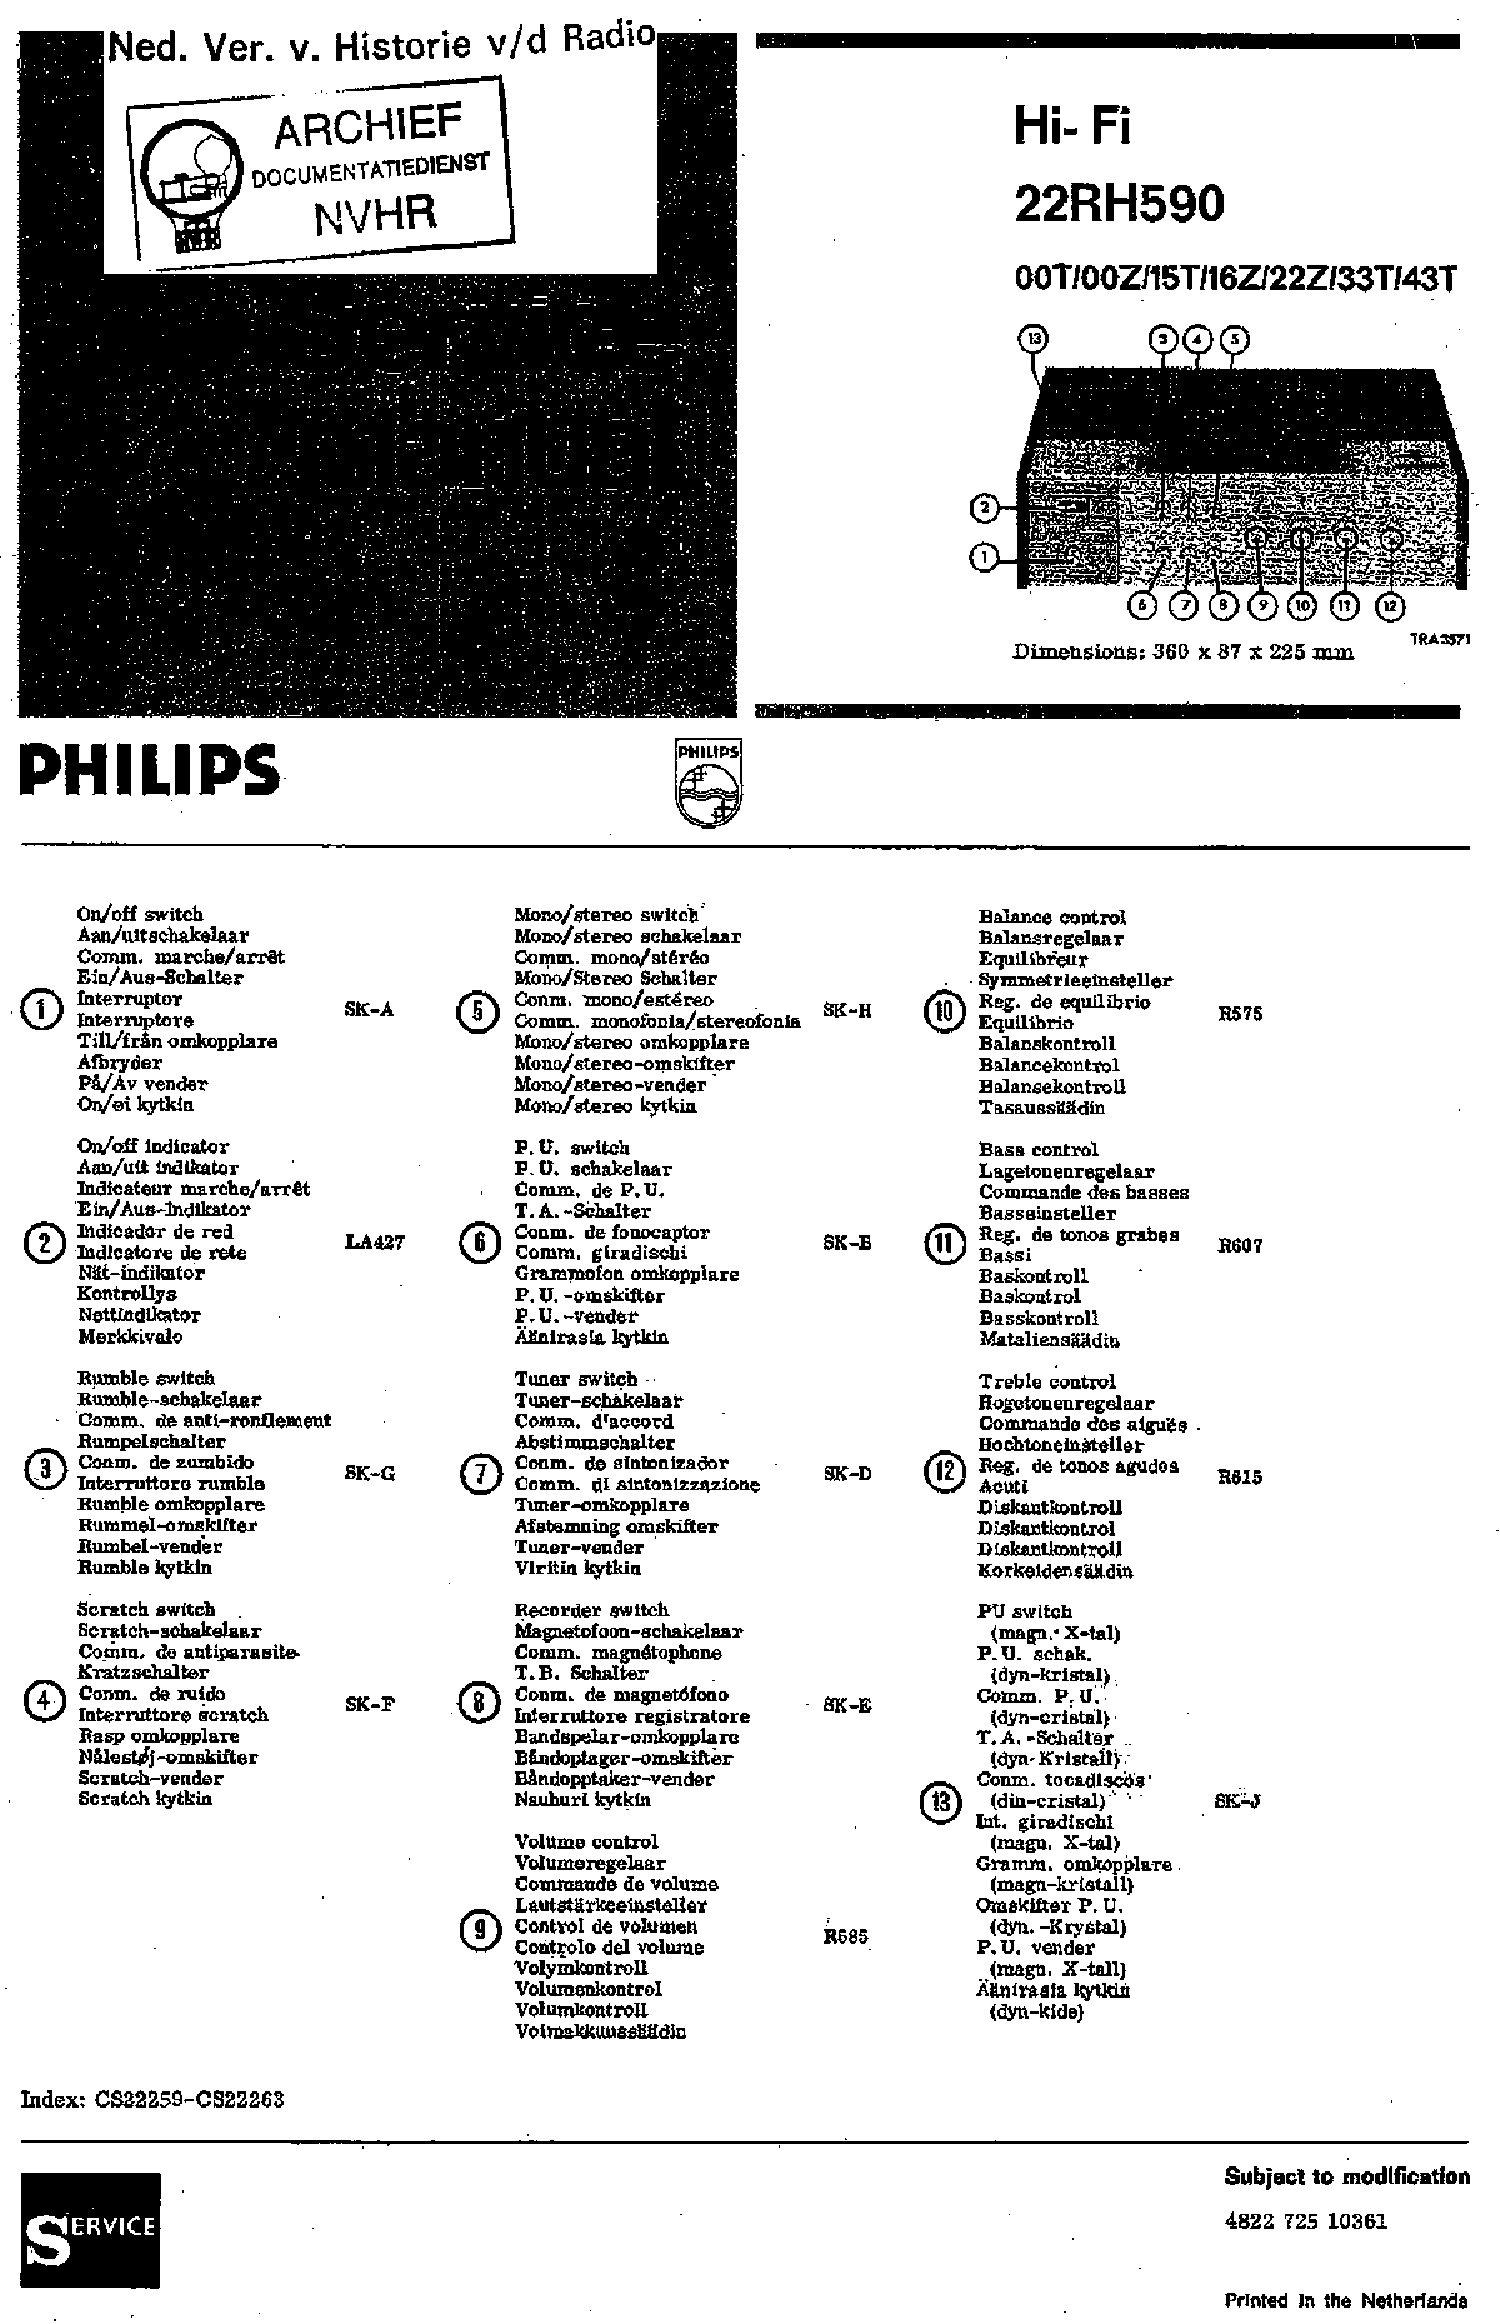 PHILIPS 22RH590-00T-00Z-15T-16Z-22Z-3T-43T HIFI AMPLIFIER 1970 SM service manual (1st page)